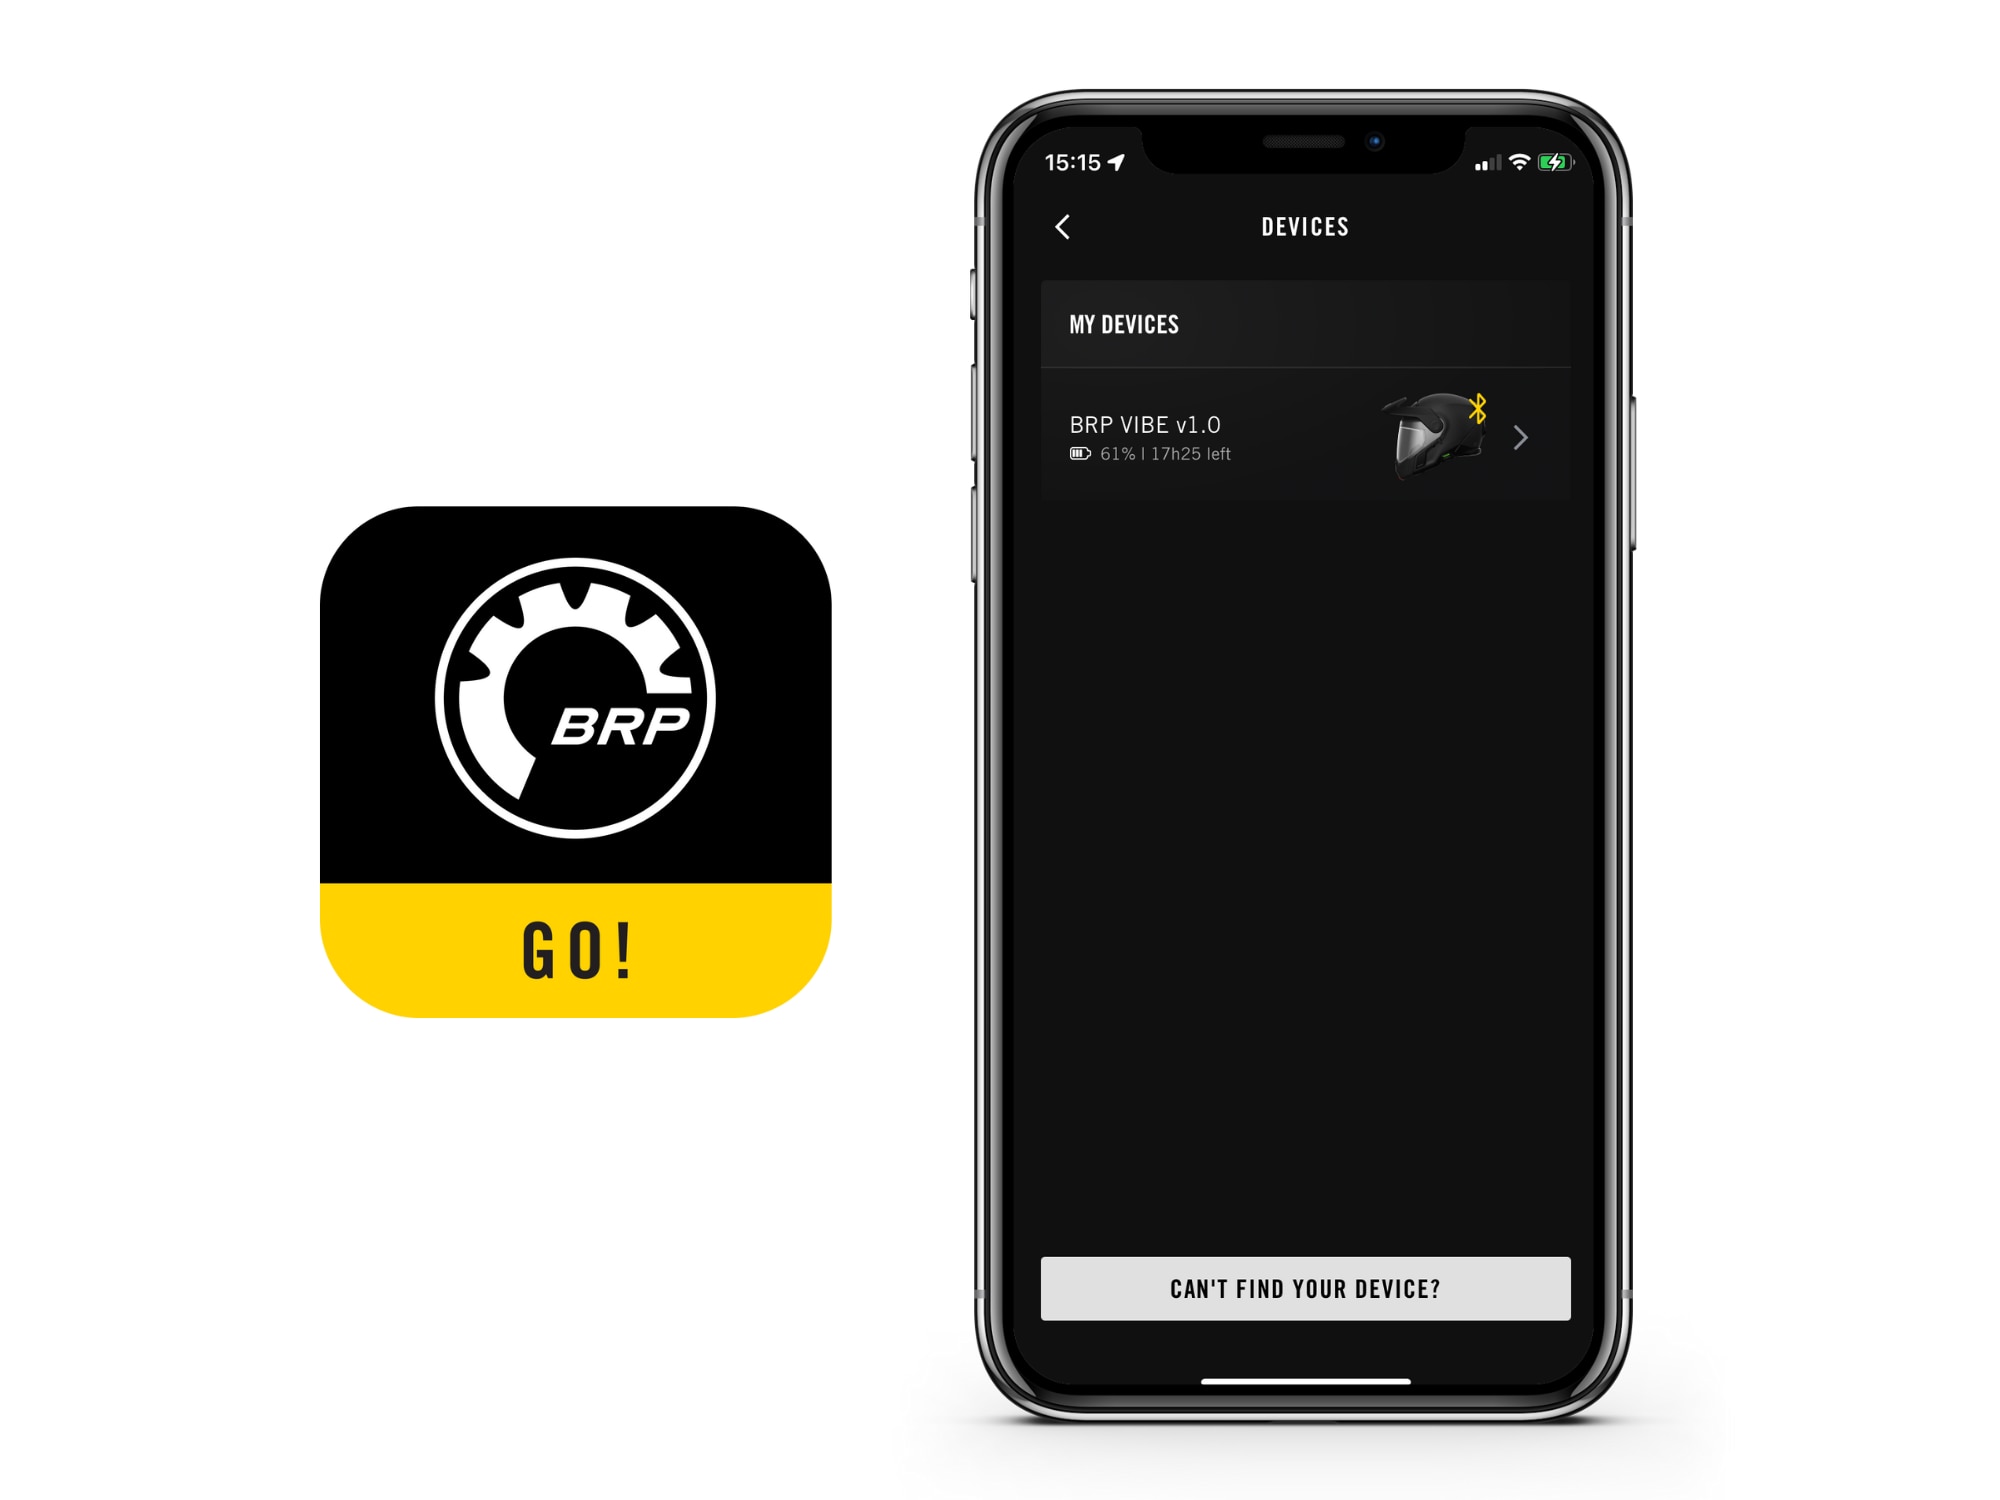 L'application BRP GO ! montre l'écran des dispositifs du système de communication Vibe.